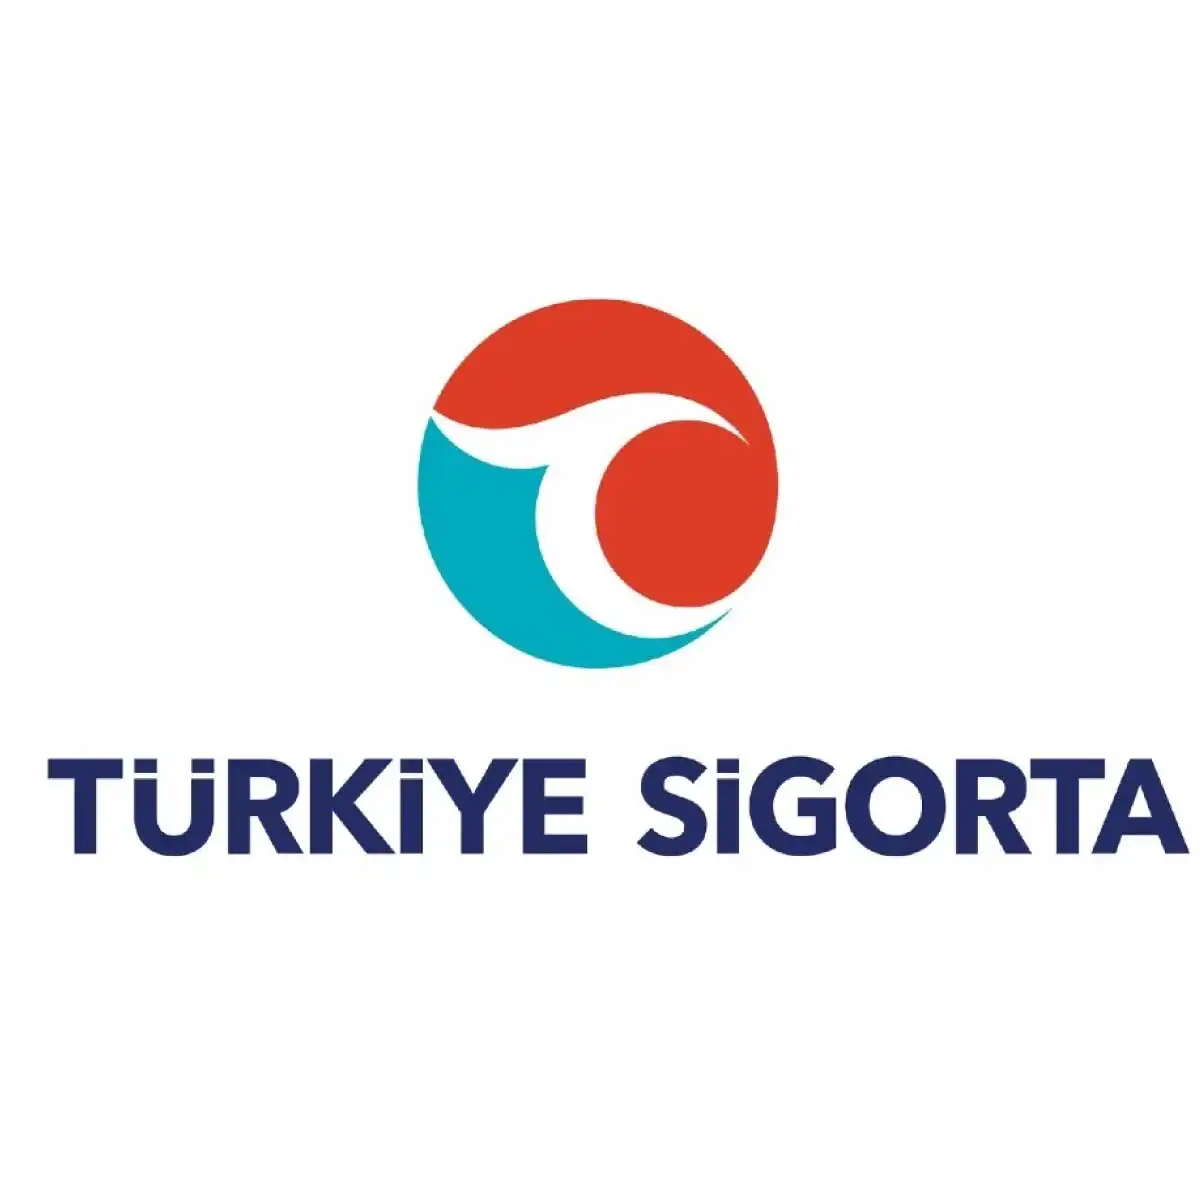 Türkiye'nin En İyi Özel Sağlık Sigorta Şirketleri Türkiye Sigorta